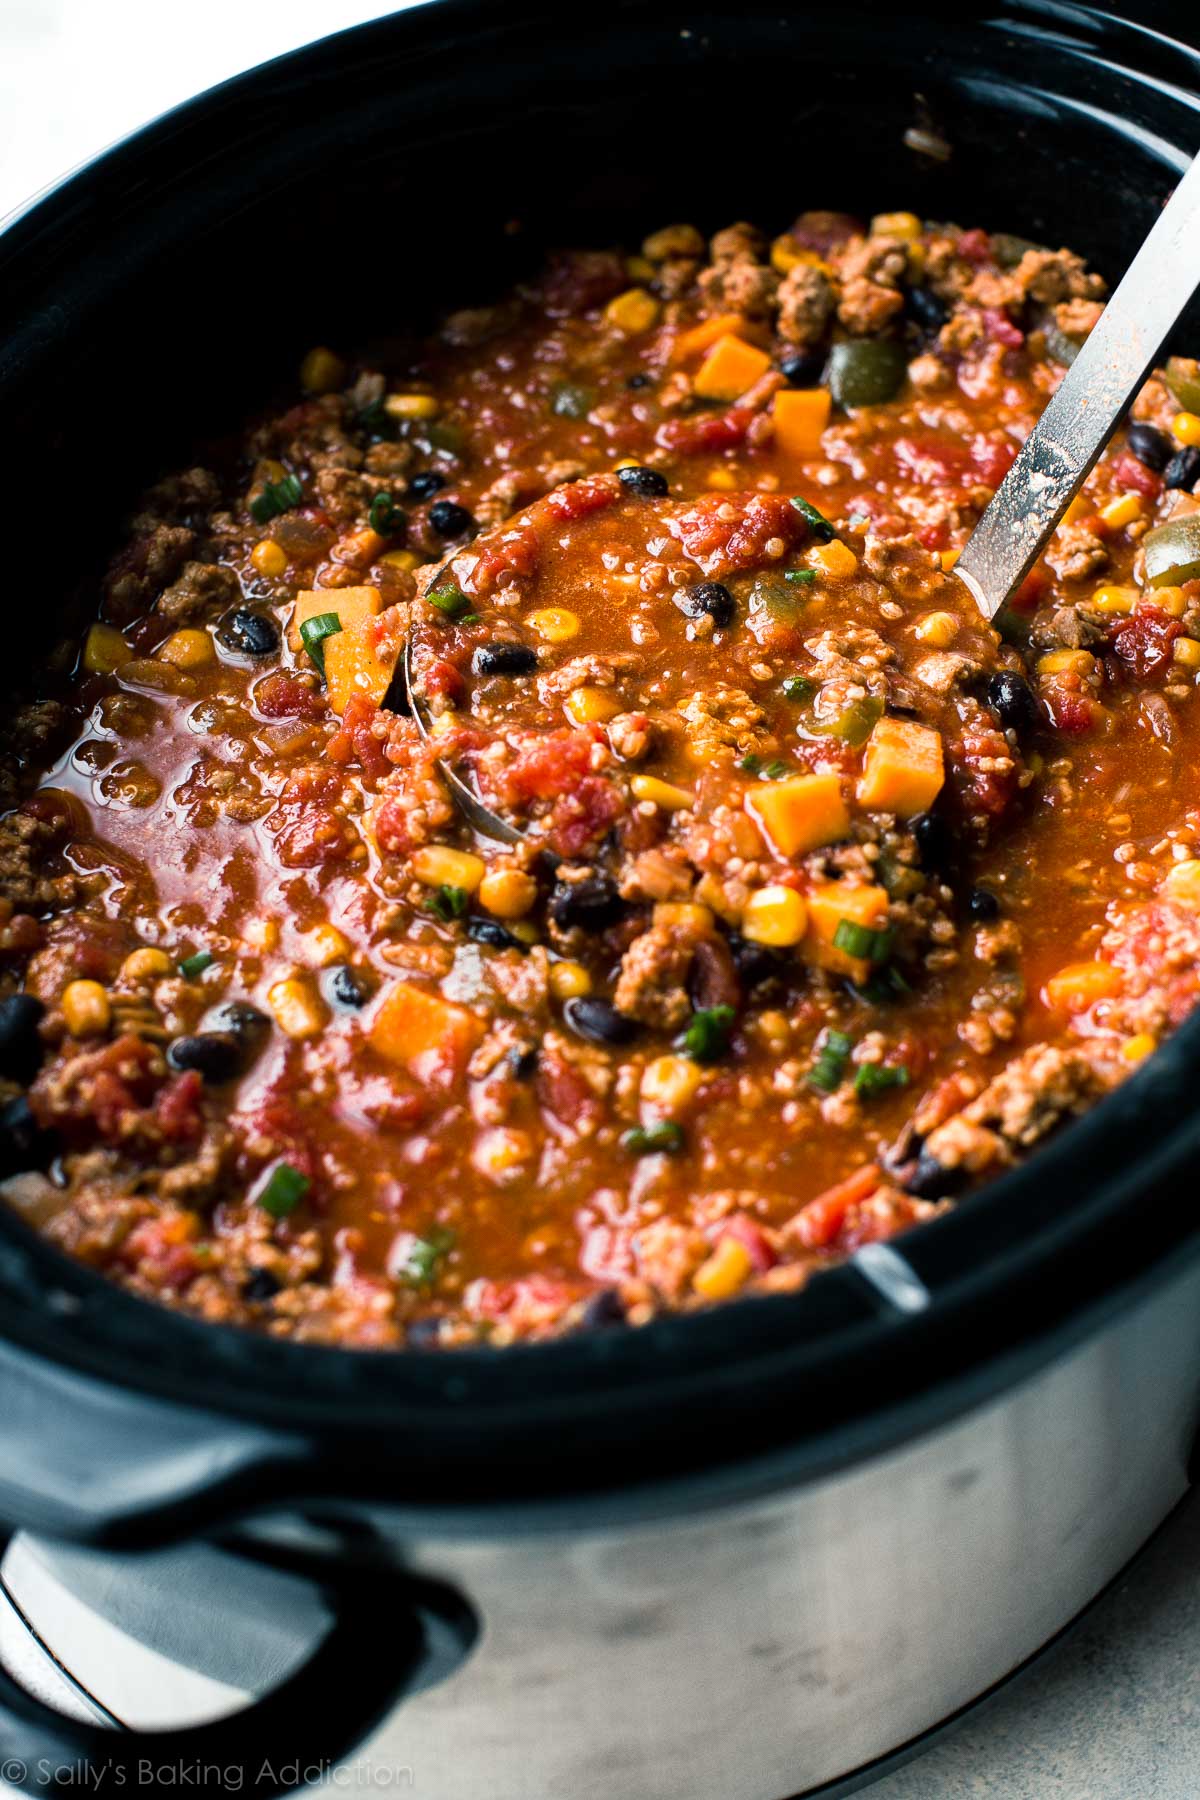 Laissez la mijoteuse faire toute la cuisine pour le dîner avec cette recette de piment taco aux épices folle et savoureuse! sallysbakingaddiction.com